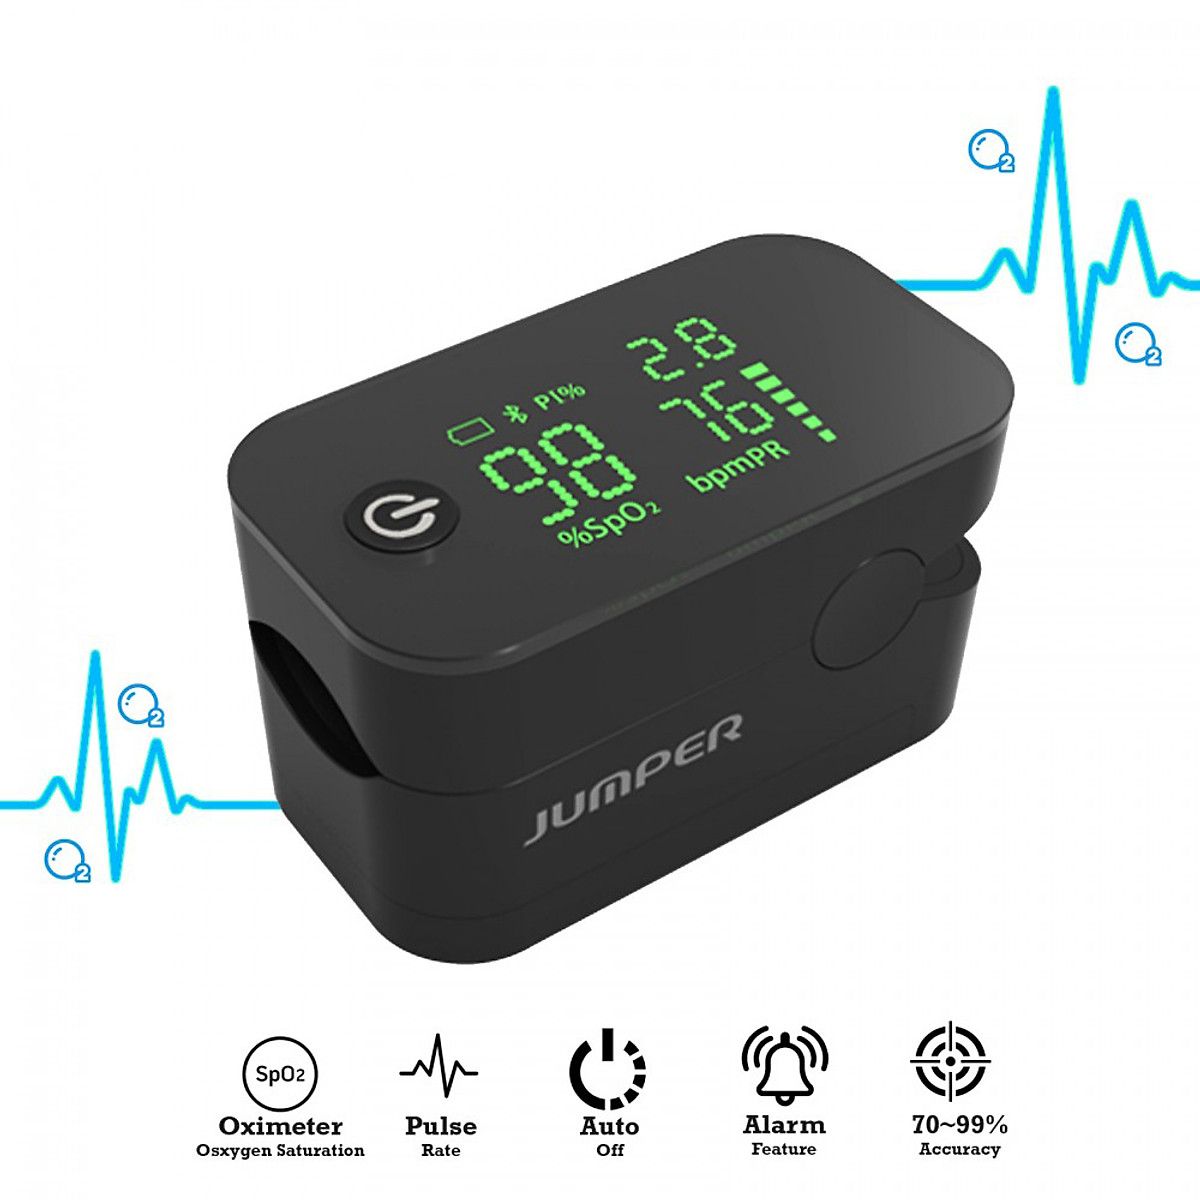 Máy đo nồng độ oxy máu SpO2, PR, PI Jumper JPD-500G (Kết nối Bluetooth + APP mobile)